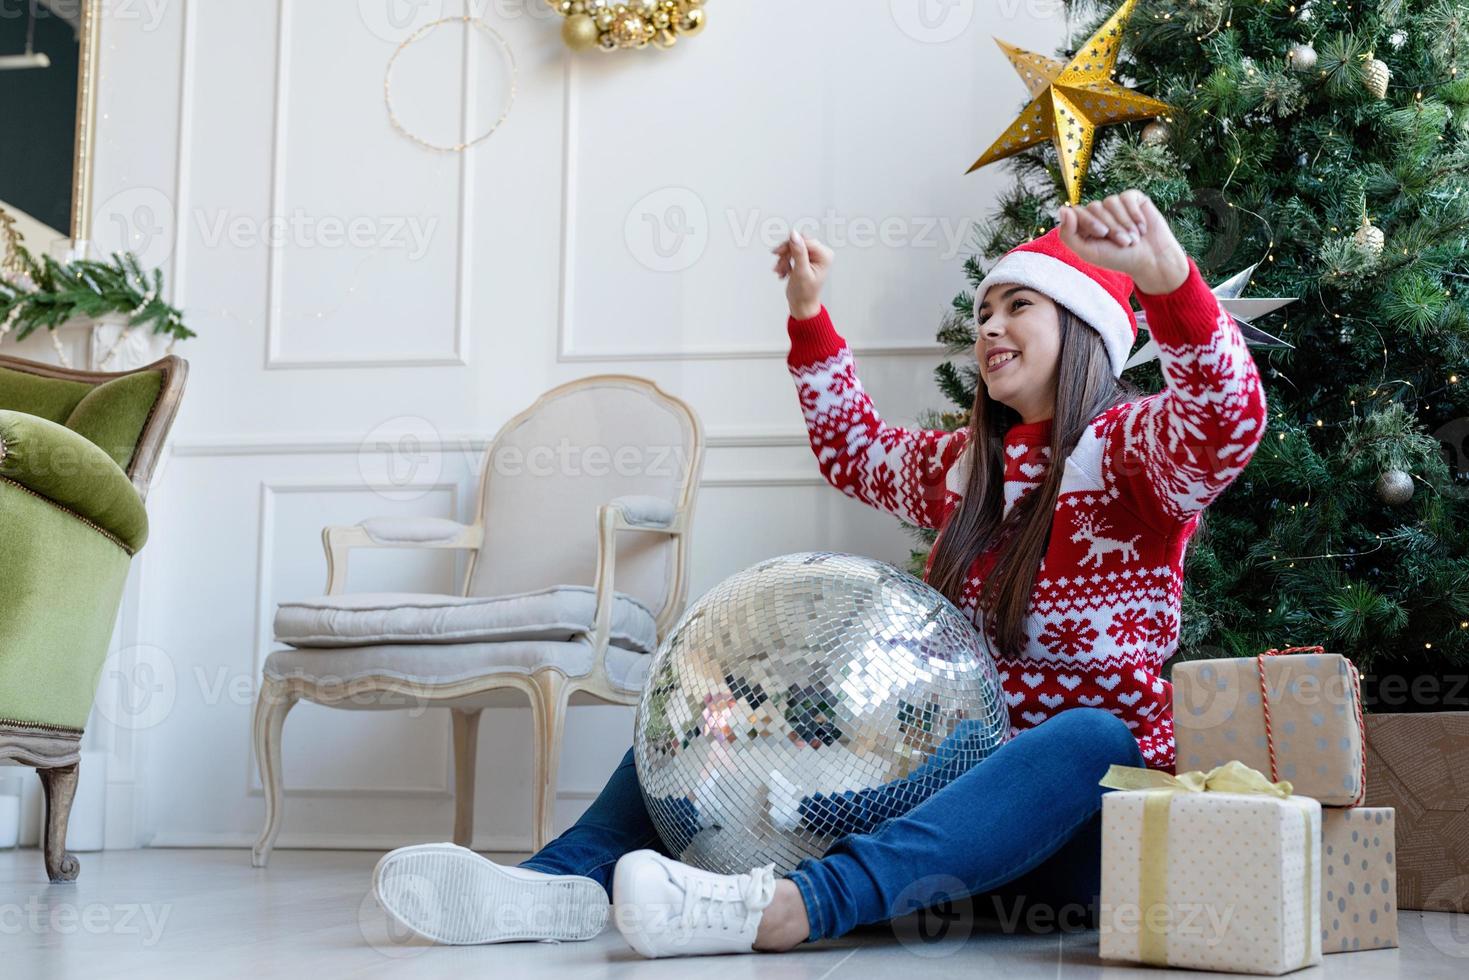 giovane donna con cappello da Babbo Natale che tiene in mano una palla da discoteca a specchio che balla vicino all'albero di natale foto